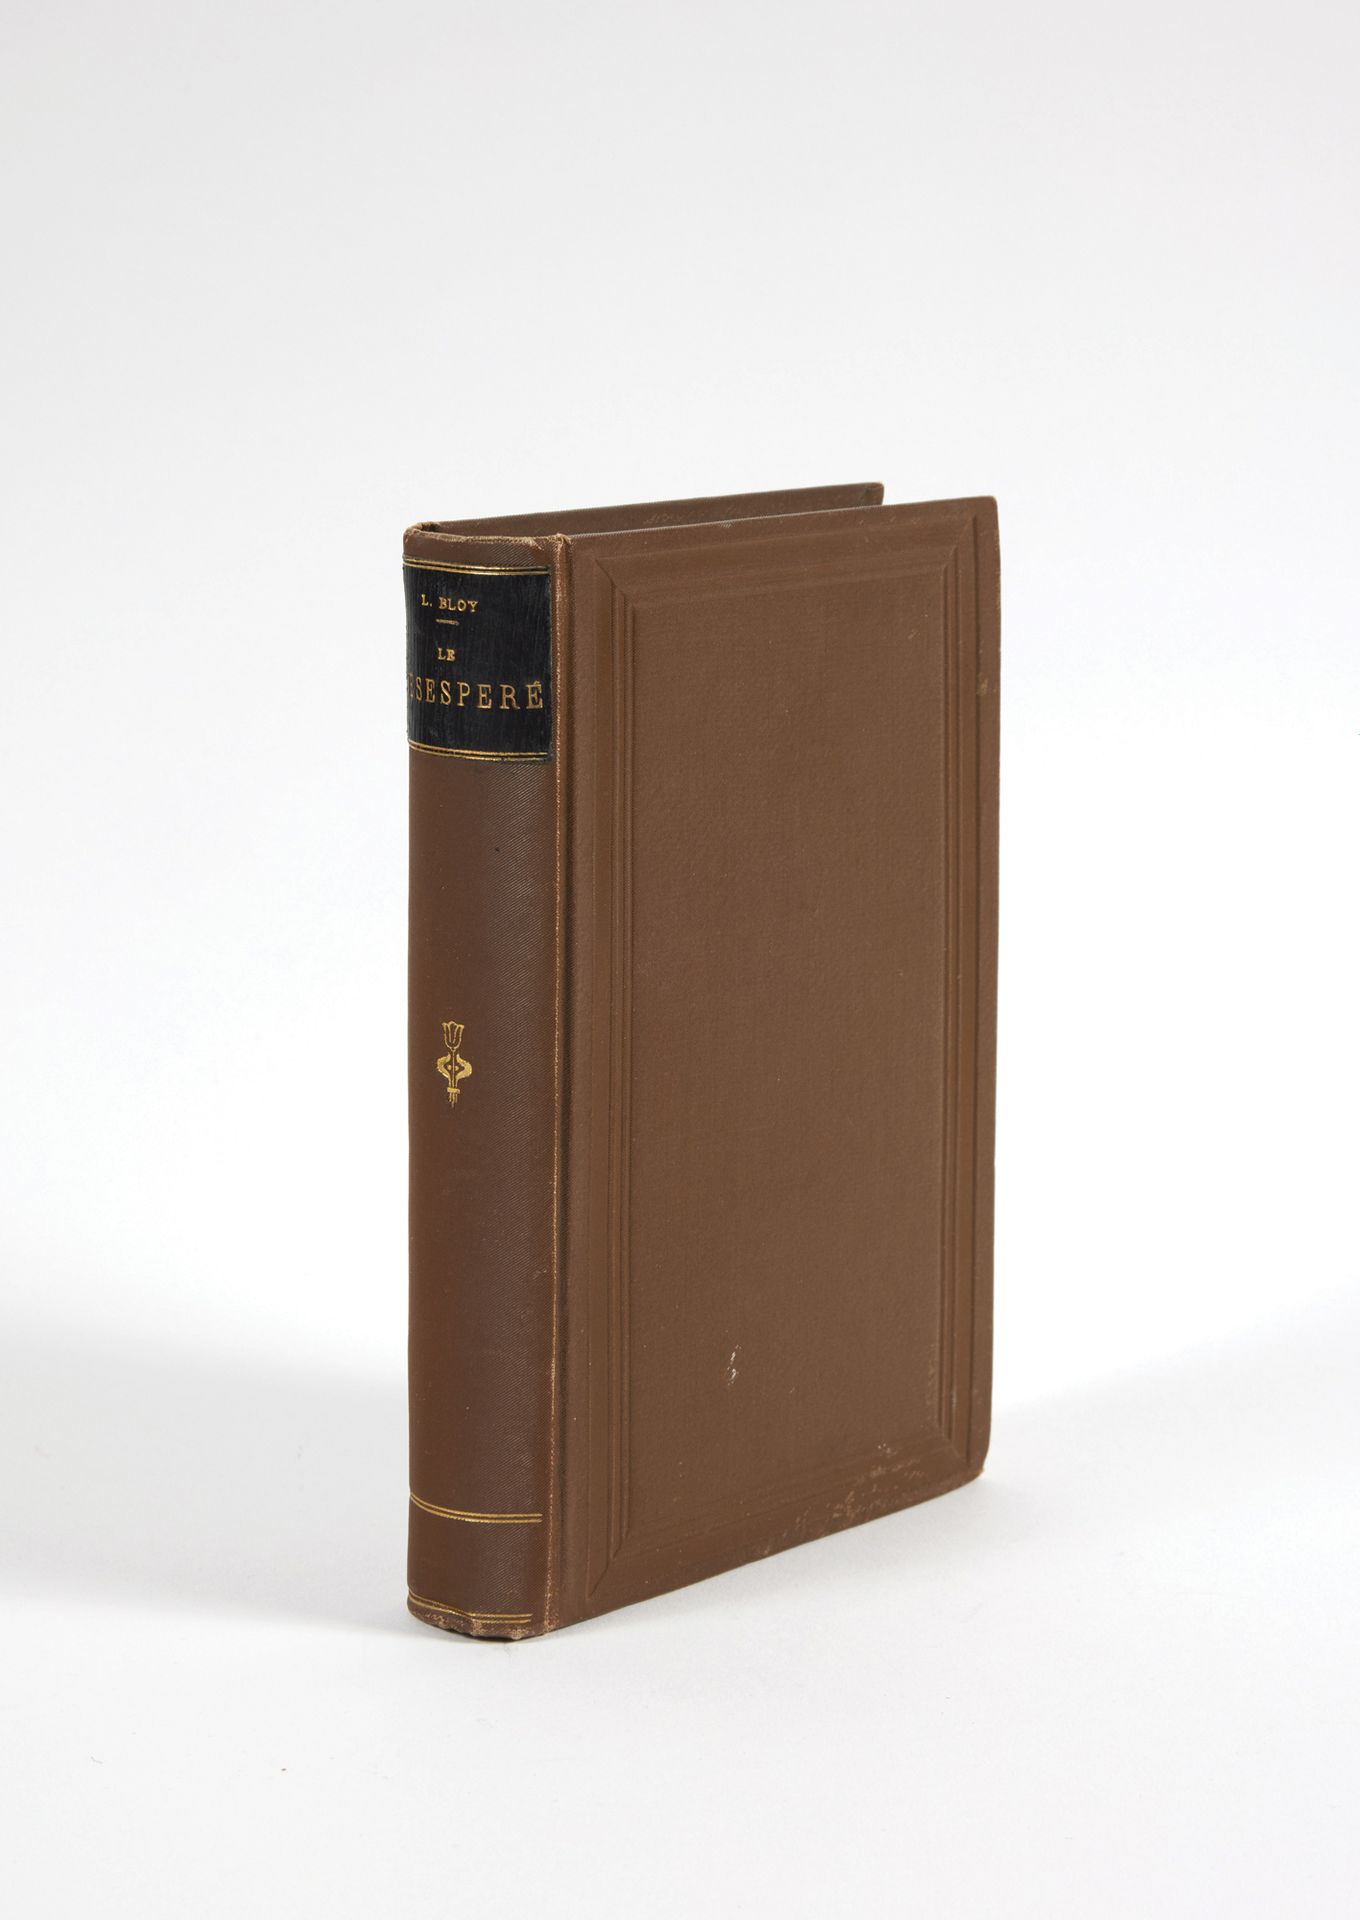 BLOY, Léon. Le Désespéré.巴黎，Tresse & Stock，1887；8开本，半哈瓦那羊皮纸，绿色标题页。

封面撕裂。

第一次印刷&hellip;